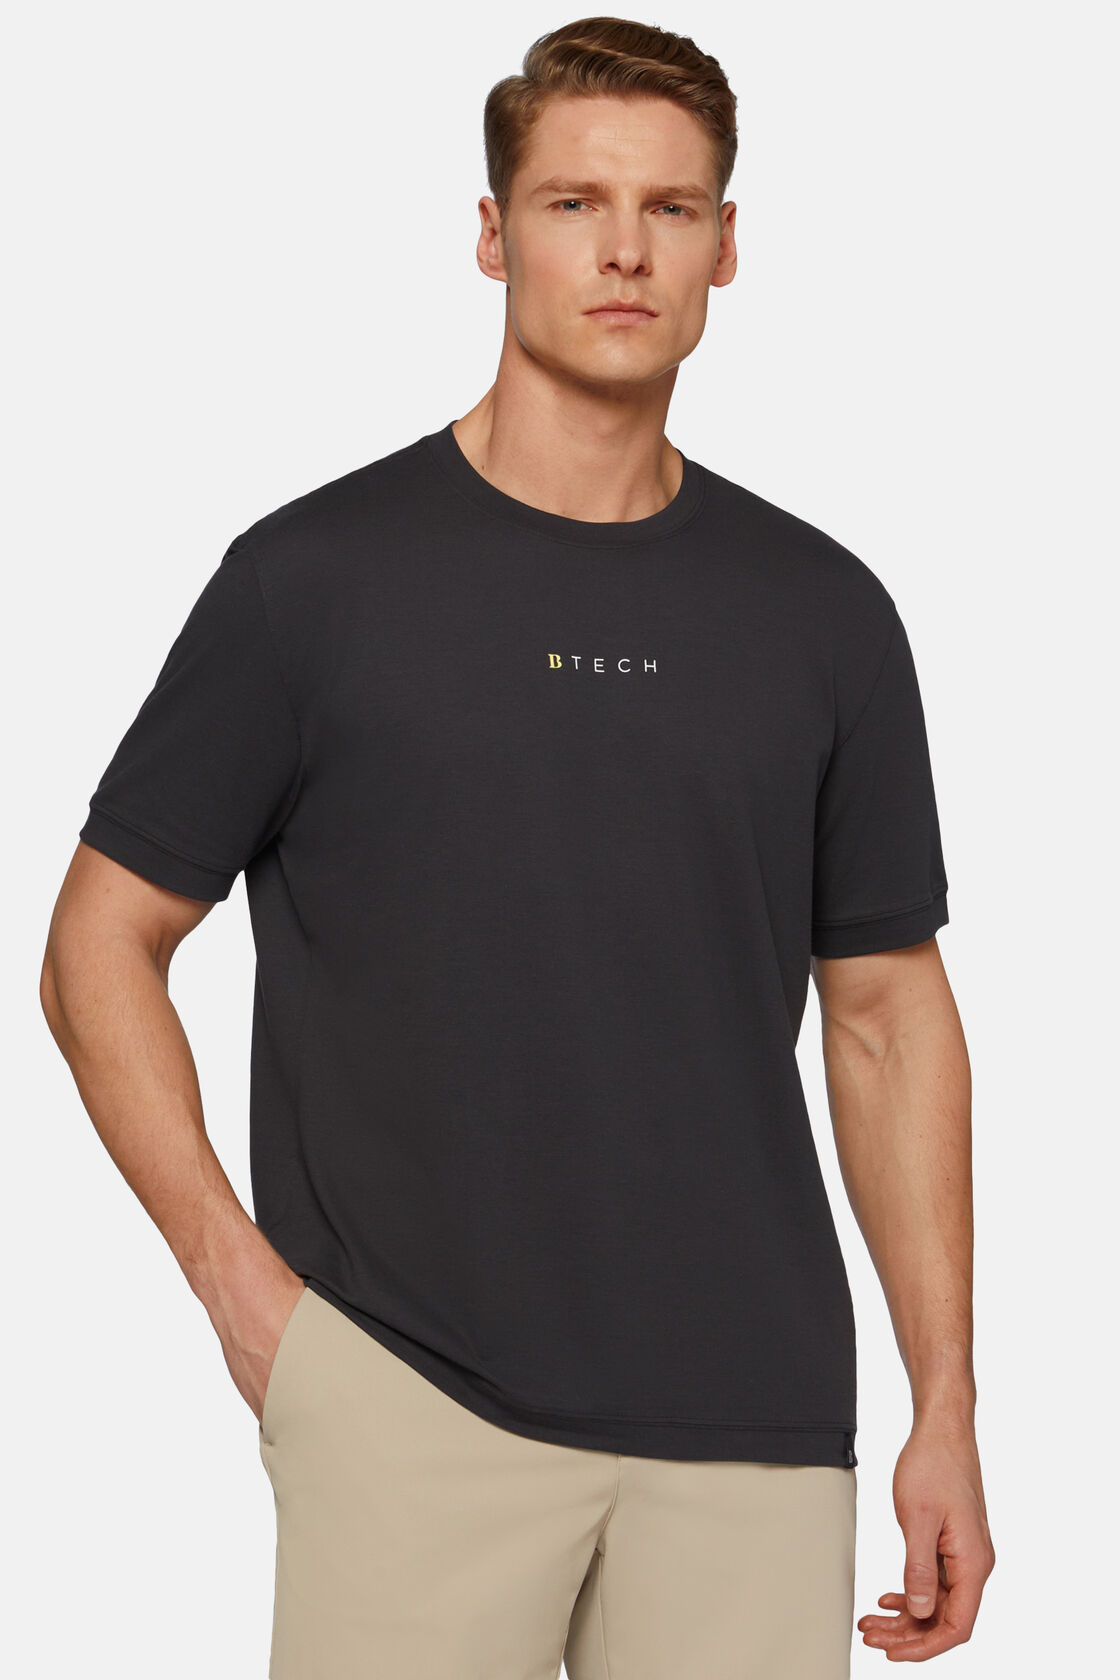 T-shirt polo em piqué de alto desempenho, Black, hi-res